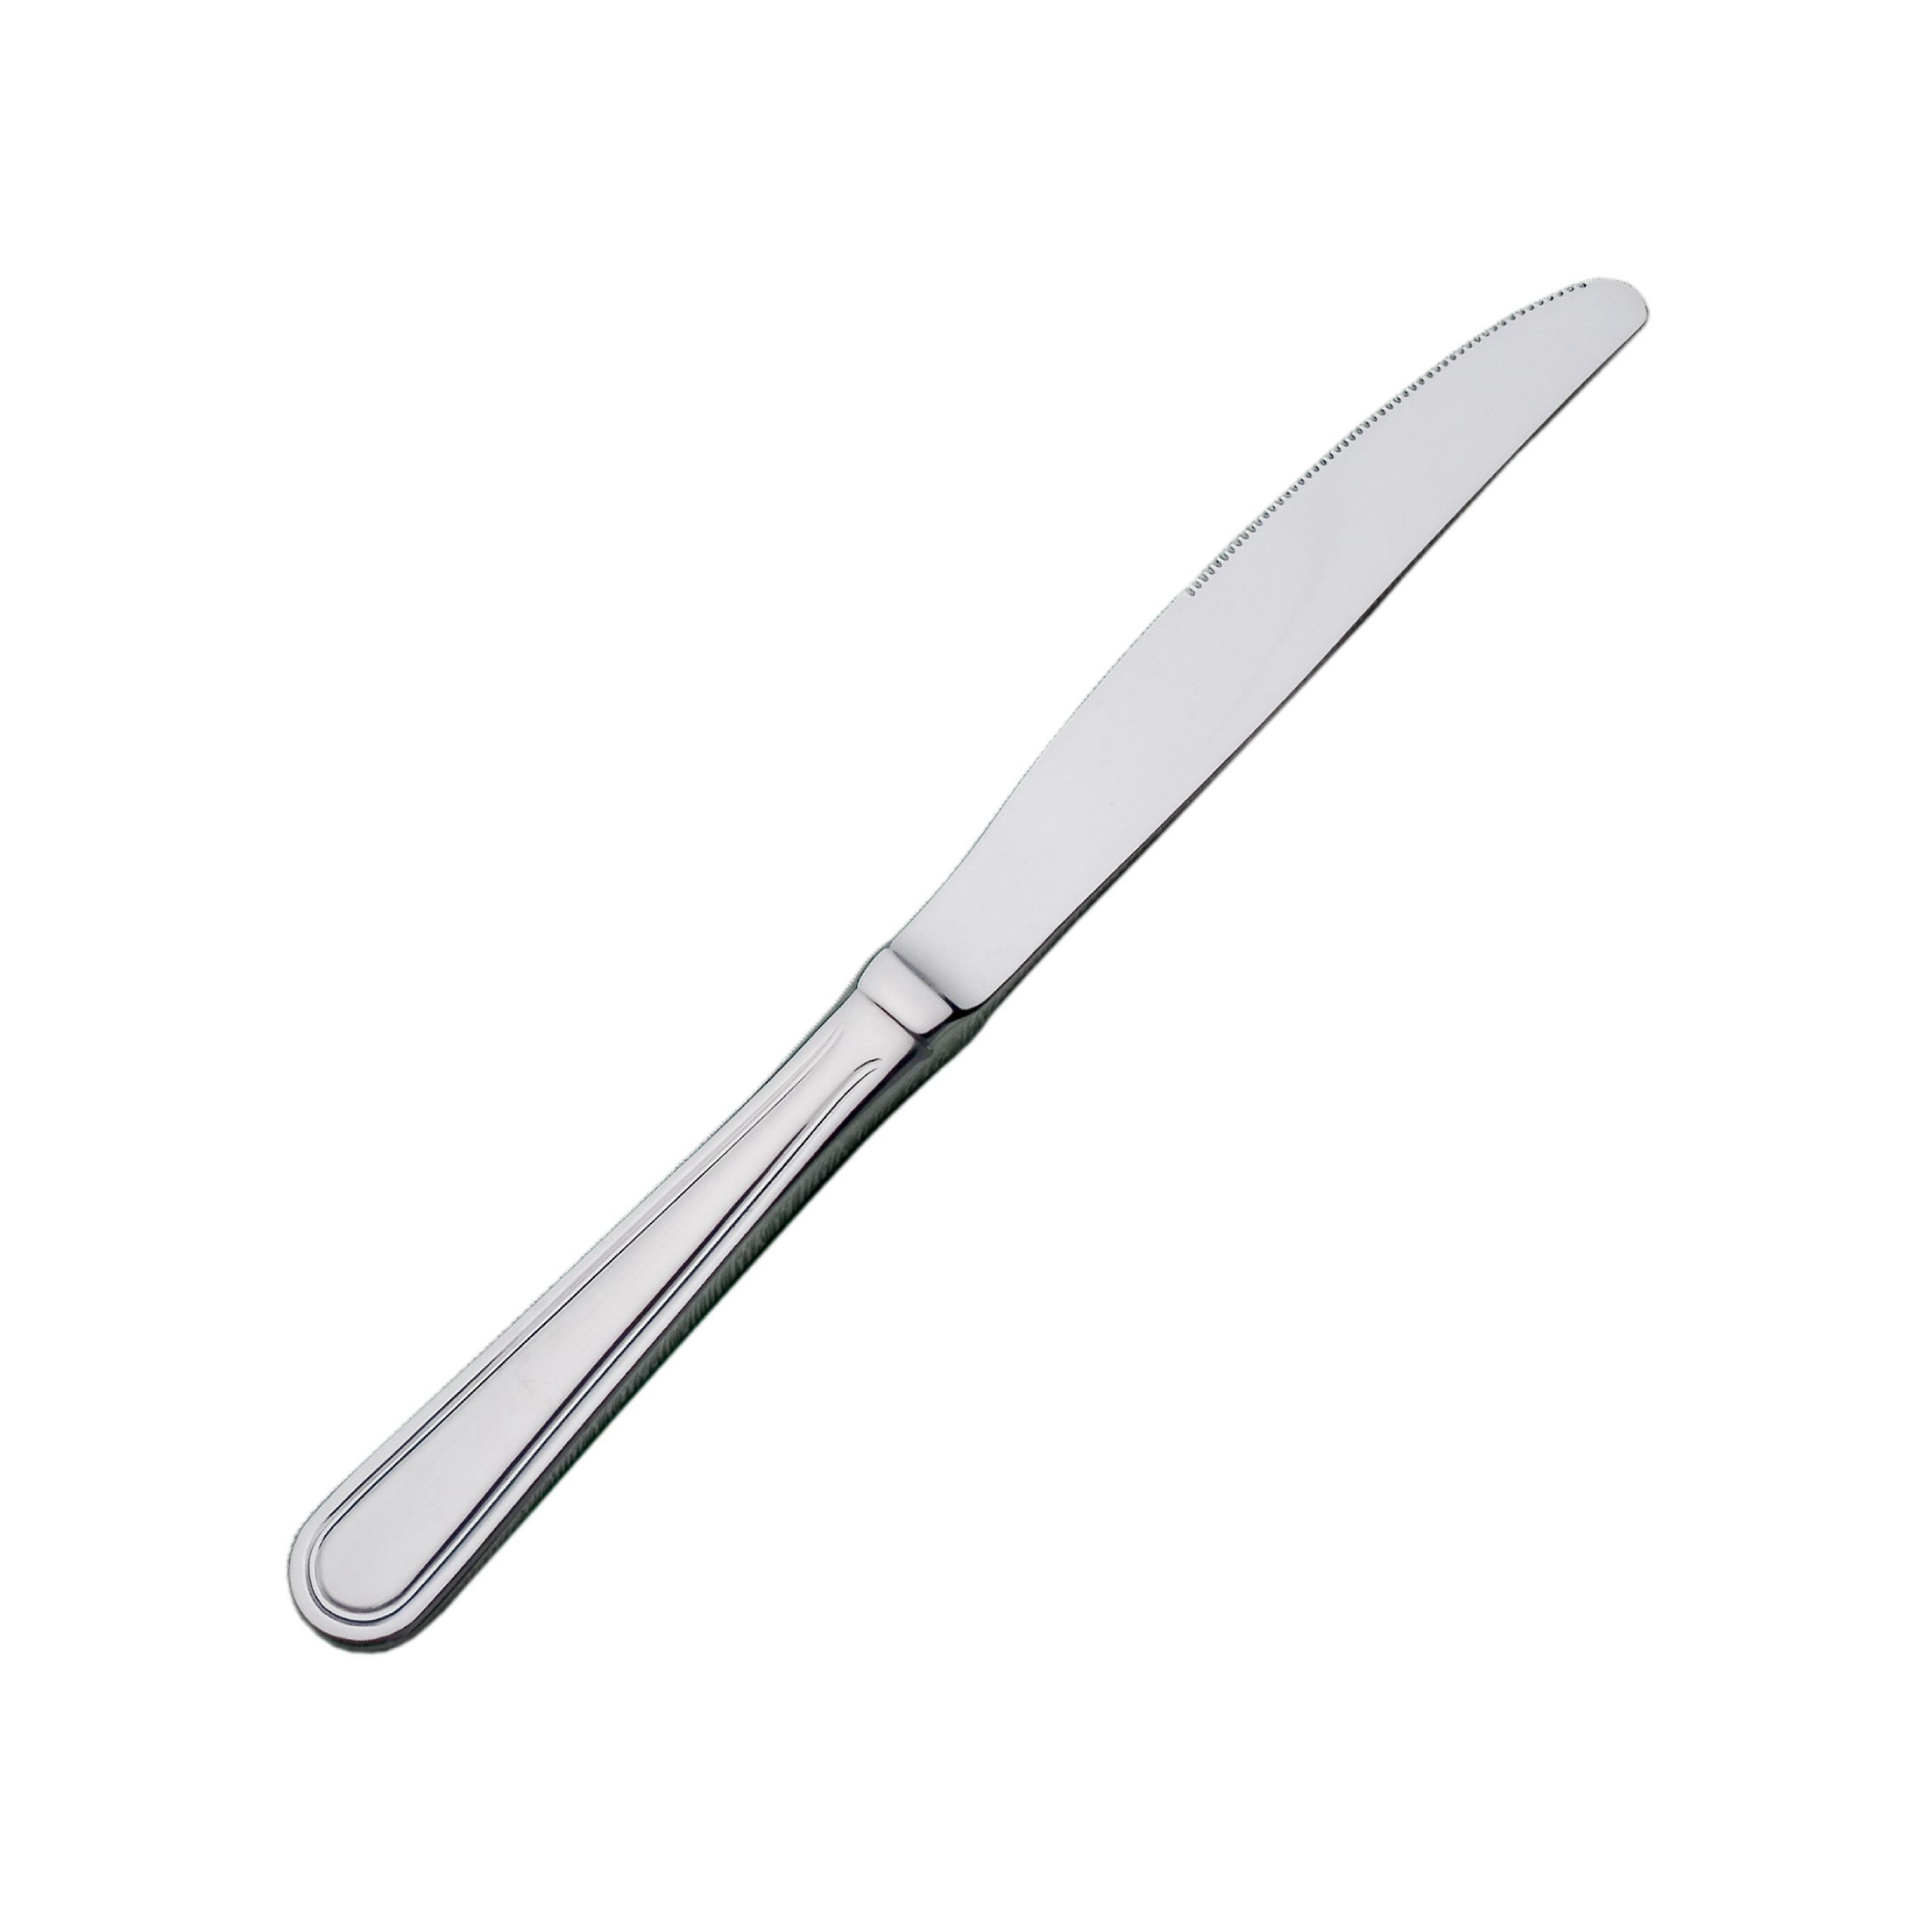 Набор столовых ножей Luxstahl Kult 23,5 см набор столовых ножей luxstahl frankfurt 23 см 2 шт